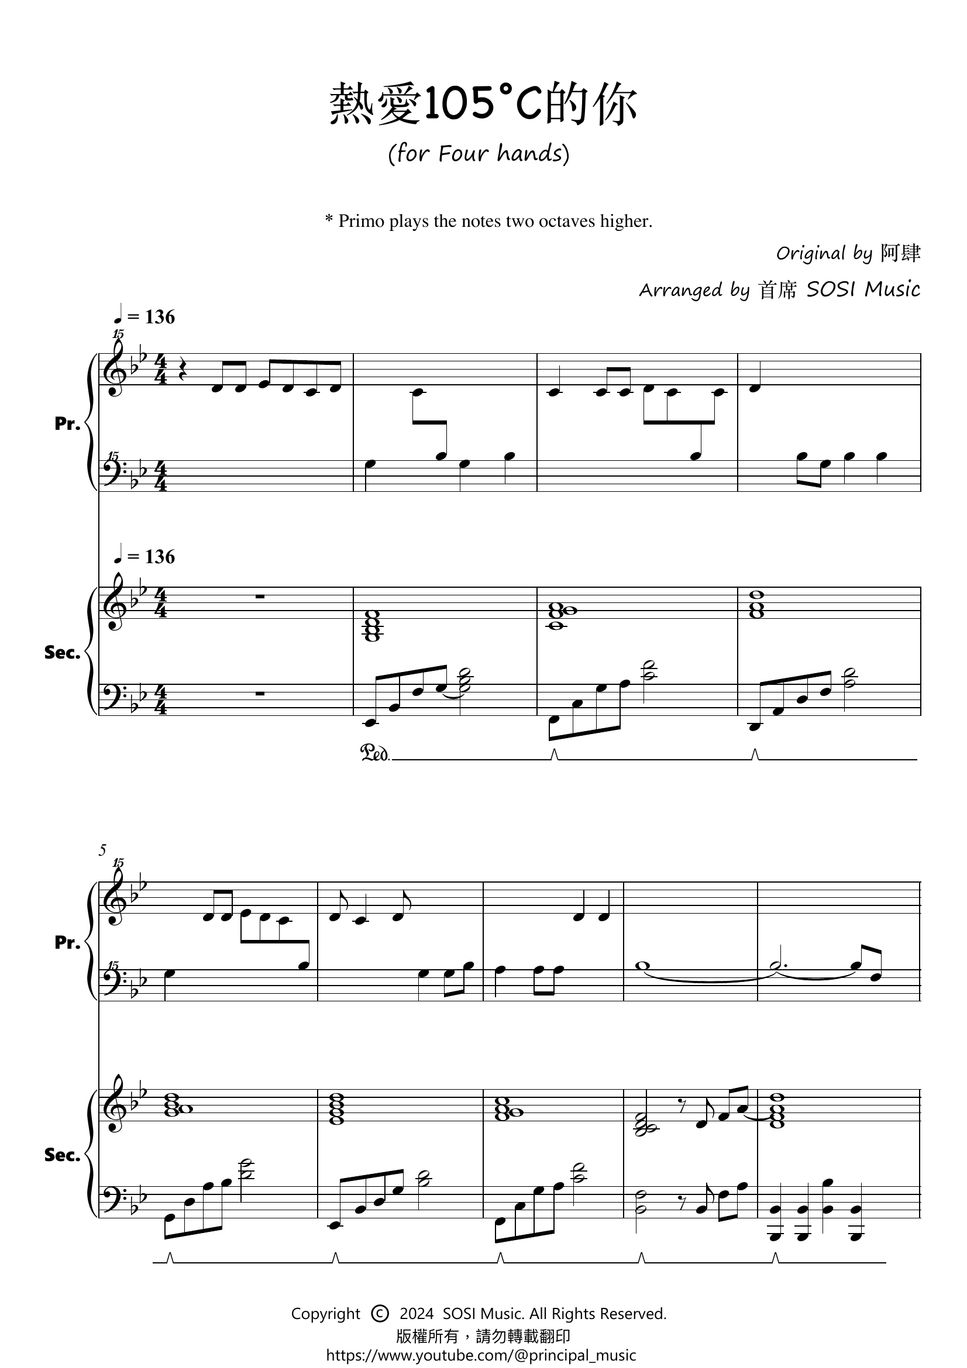 熱愛105°C的你 (Four Hands Piano / Primo for Student / Secondo for Teacher )) by 首席 SOSI Music